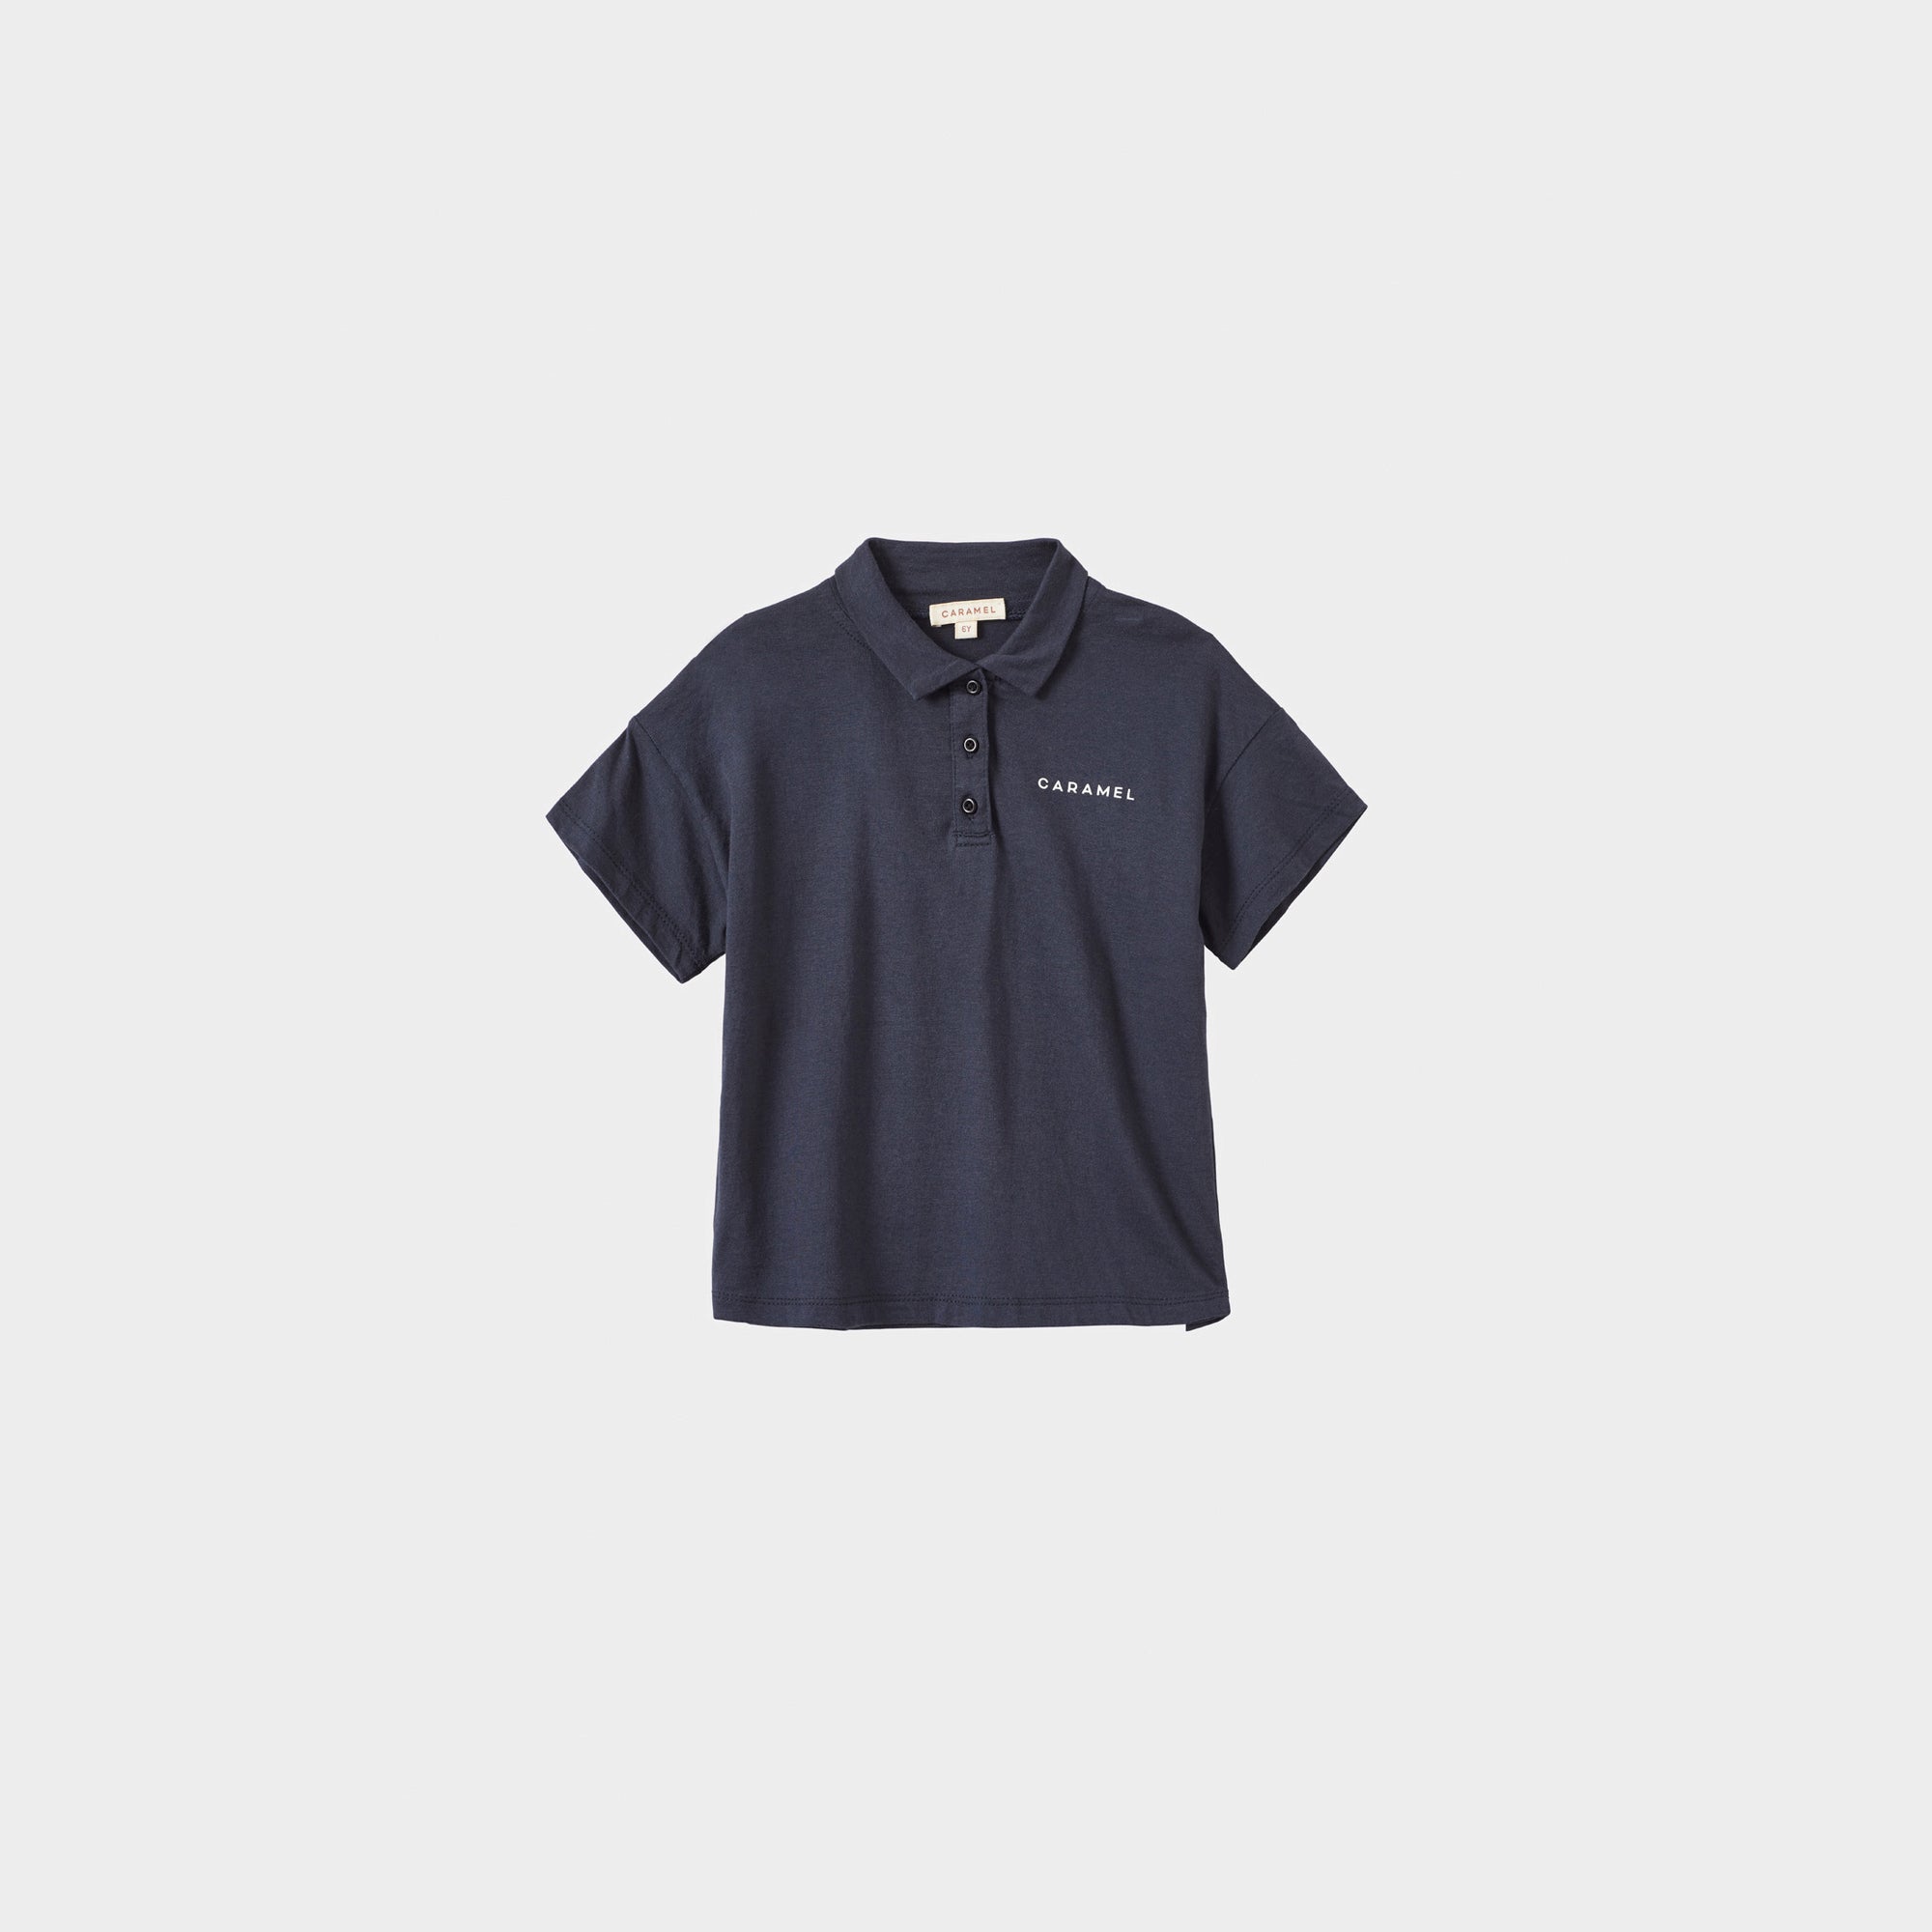 Boys & Girls Navy Cotton Polo Shirt